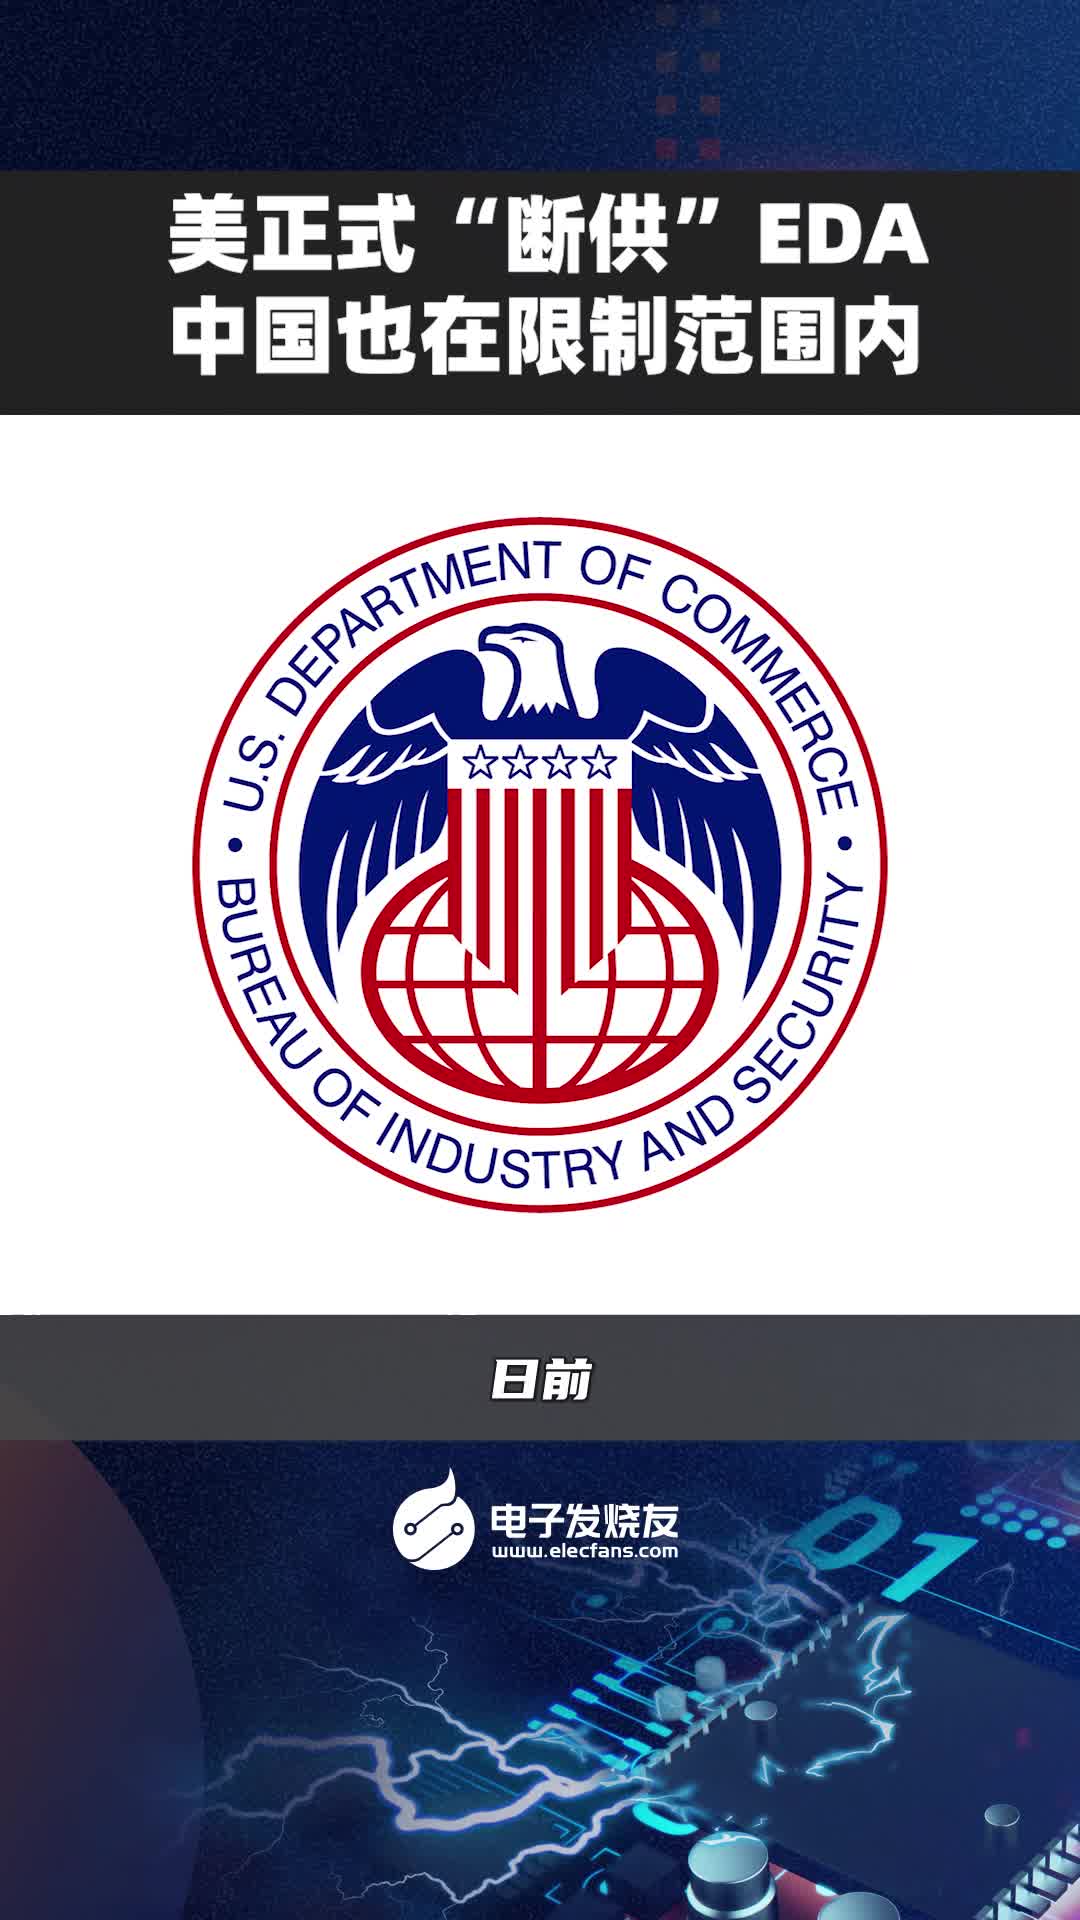 美國正式“斷供”EDA，中國也在限制范圍內